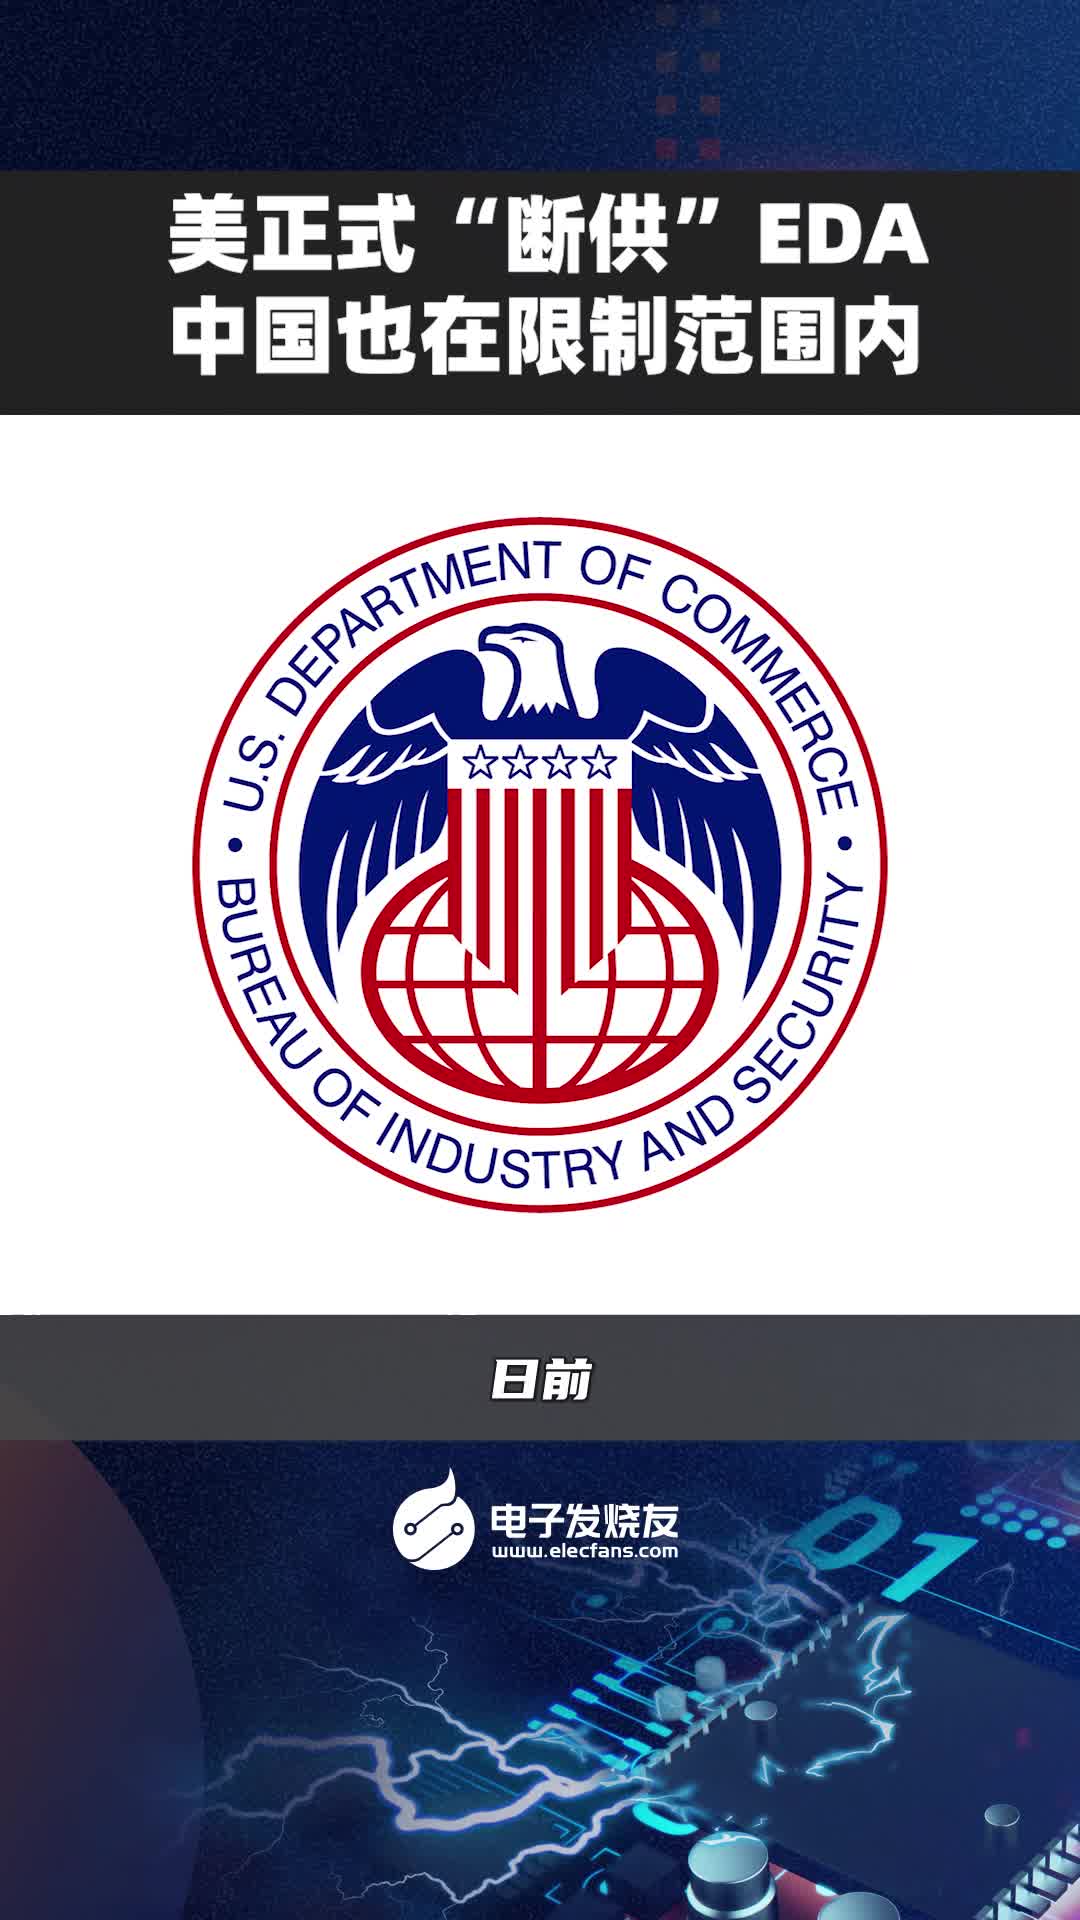 美國正式“斷供”EDA，中國也在限制范圍內